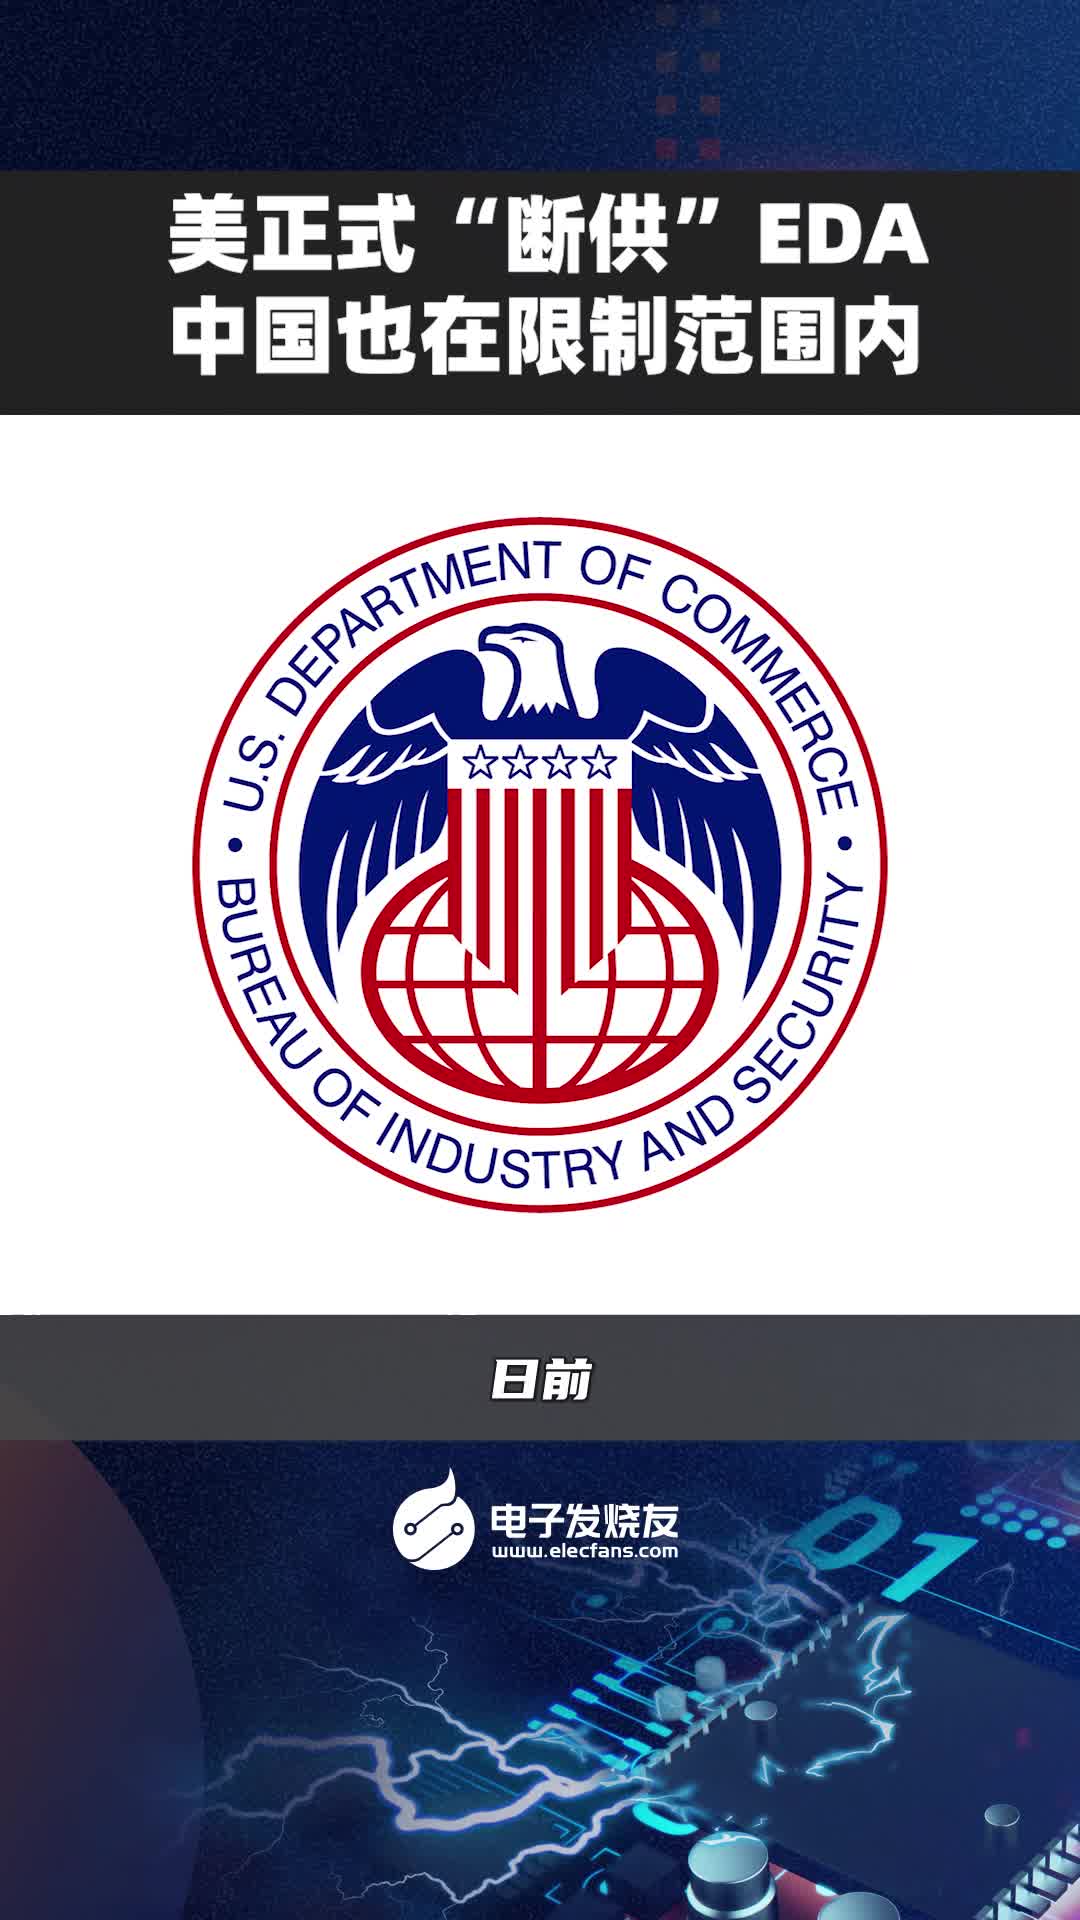 美國正式“斷供”EDA，中國也在限制范圍內